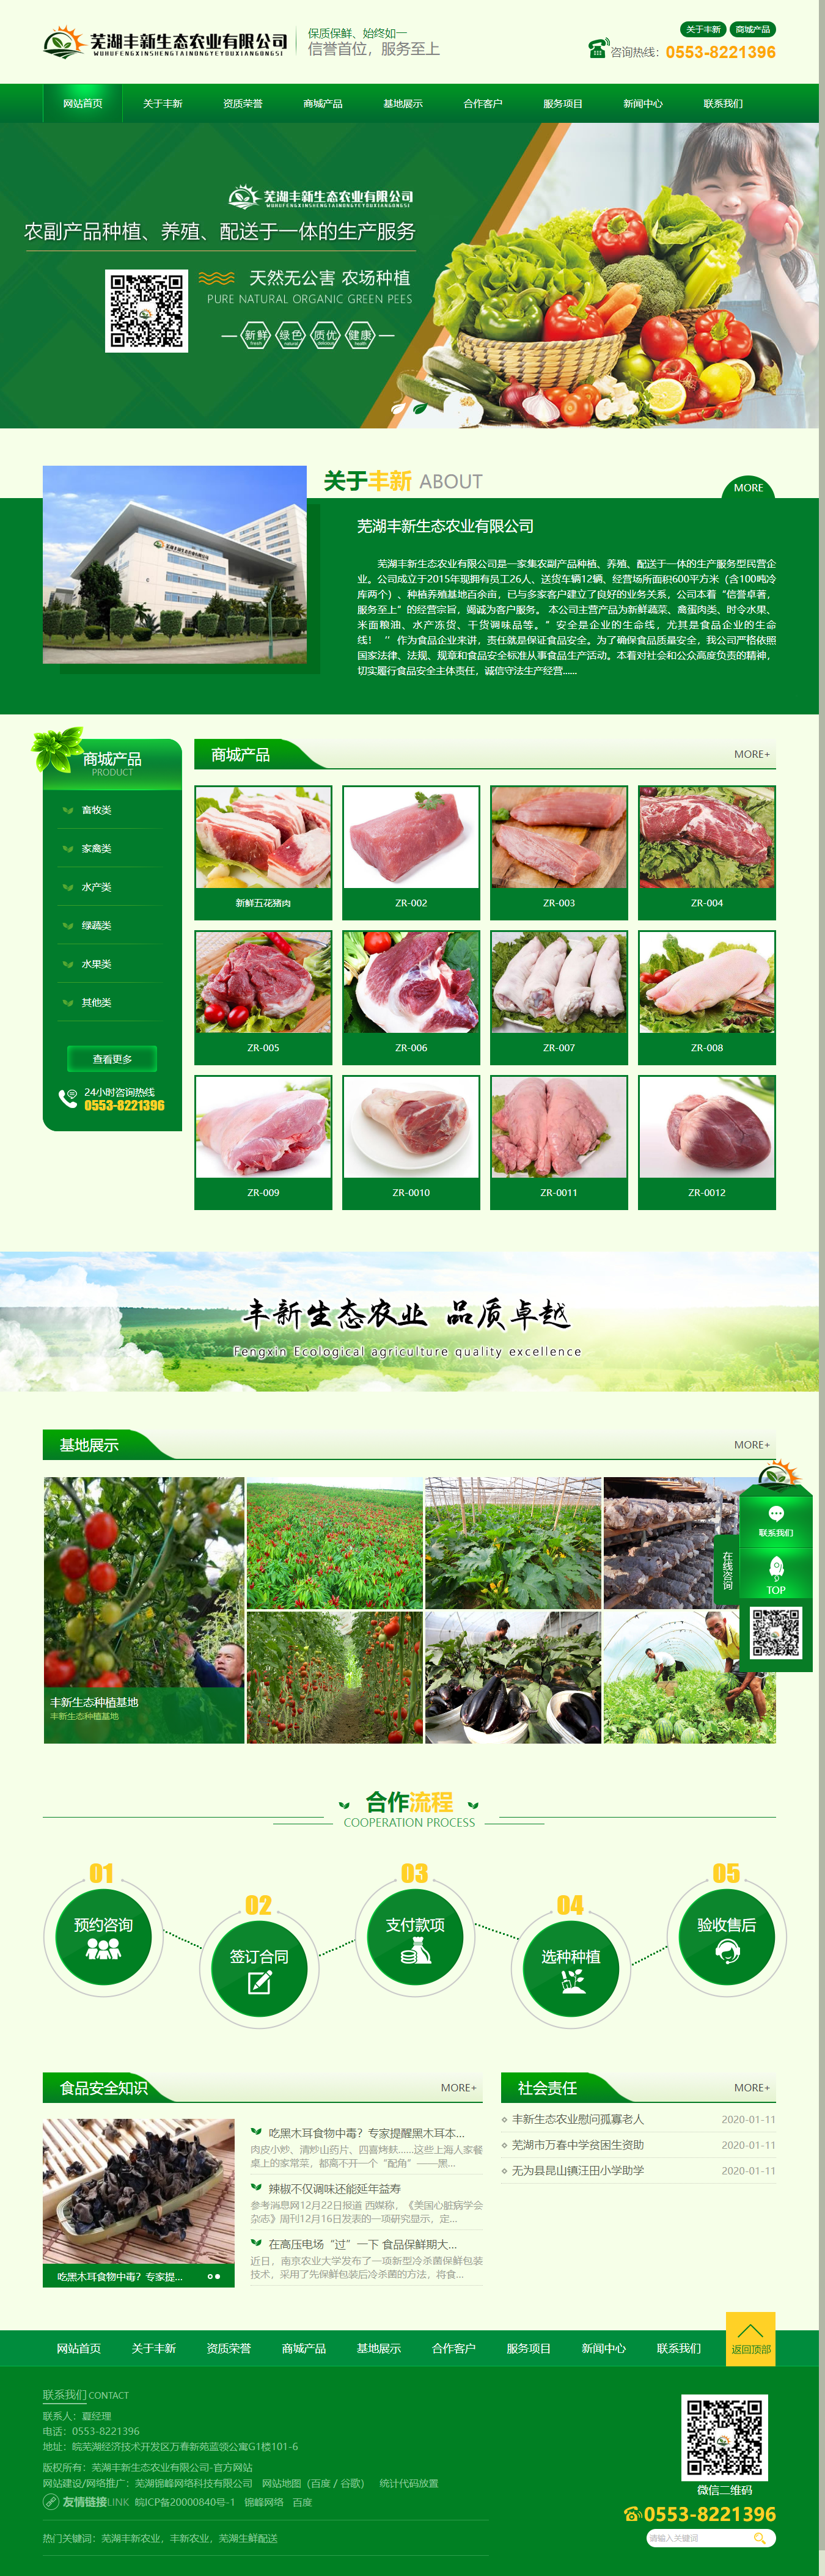 芜湖丰新生态农业有限公司网站案例